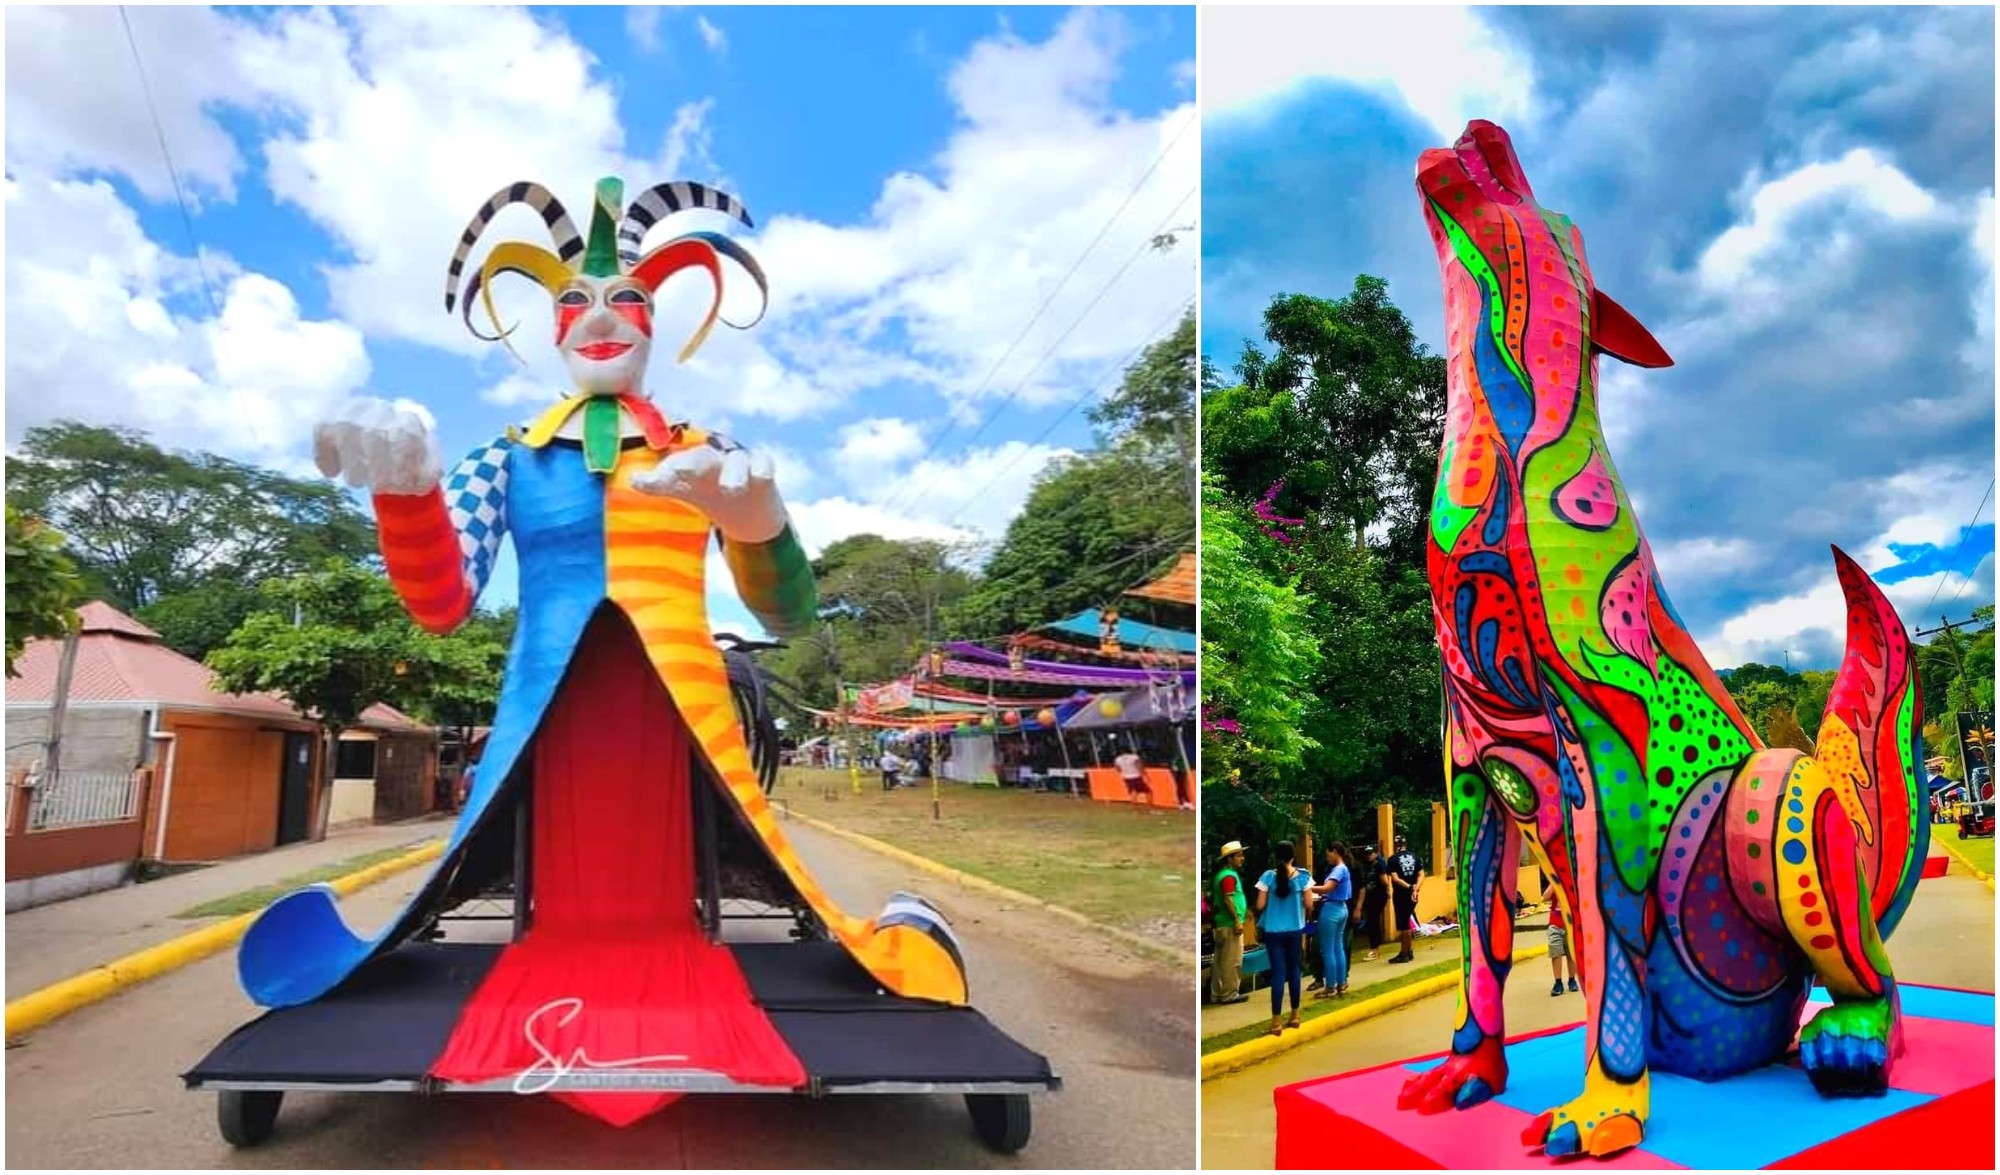 Festival de las Chimeneas Gigantes y el Paseo Real, patrimonio cultural de Honduras